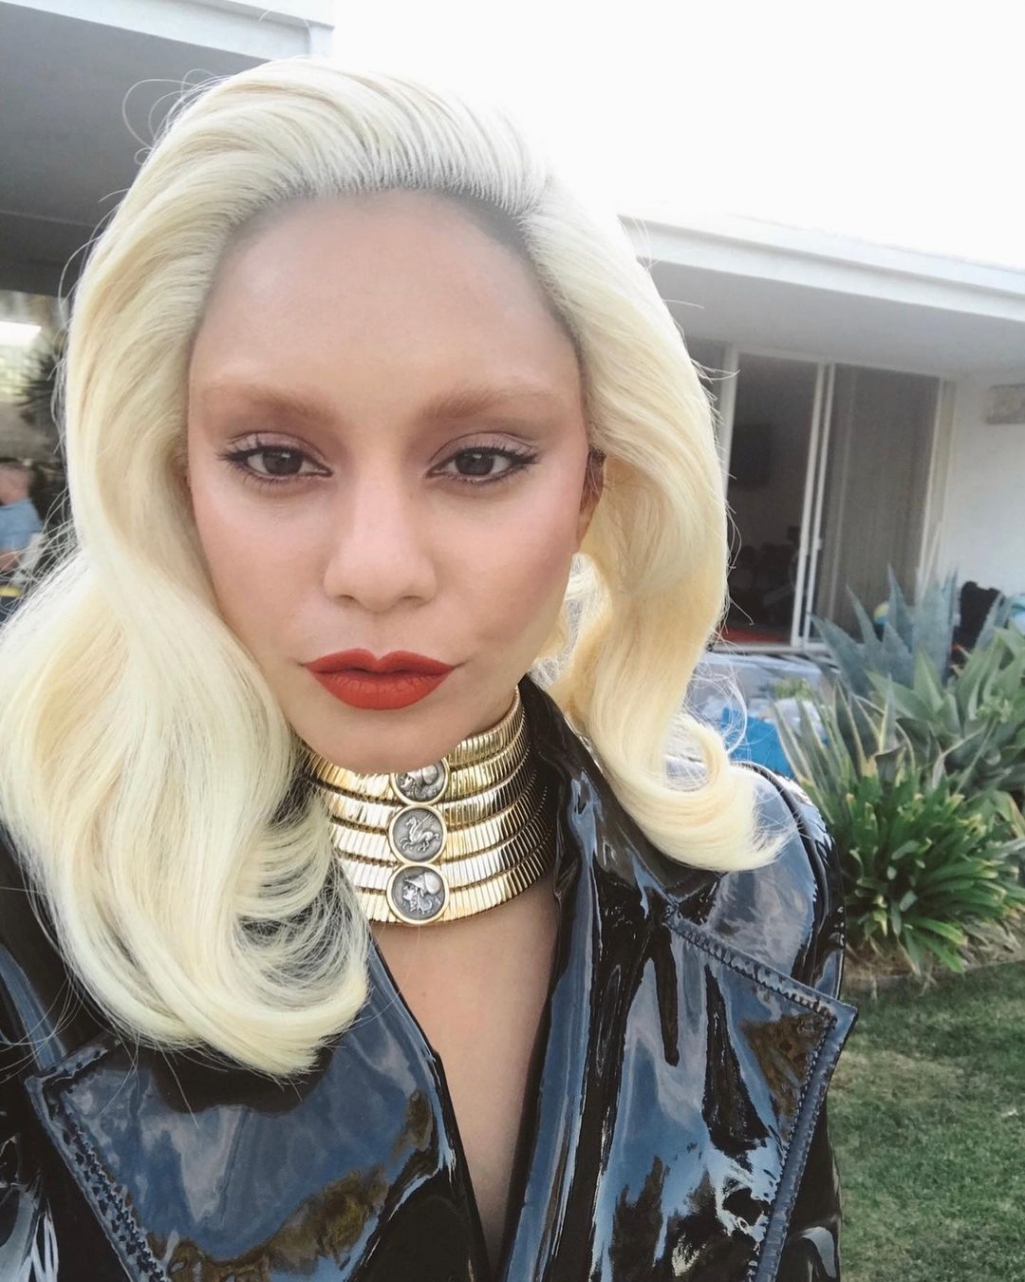 Vanessa Hudgens Lady Gagának öltözött - így fest szőke hajjal a híresség